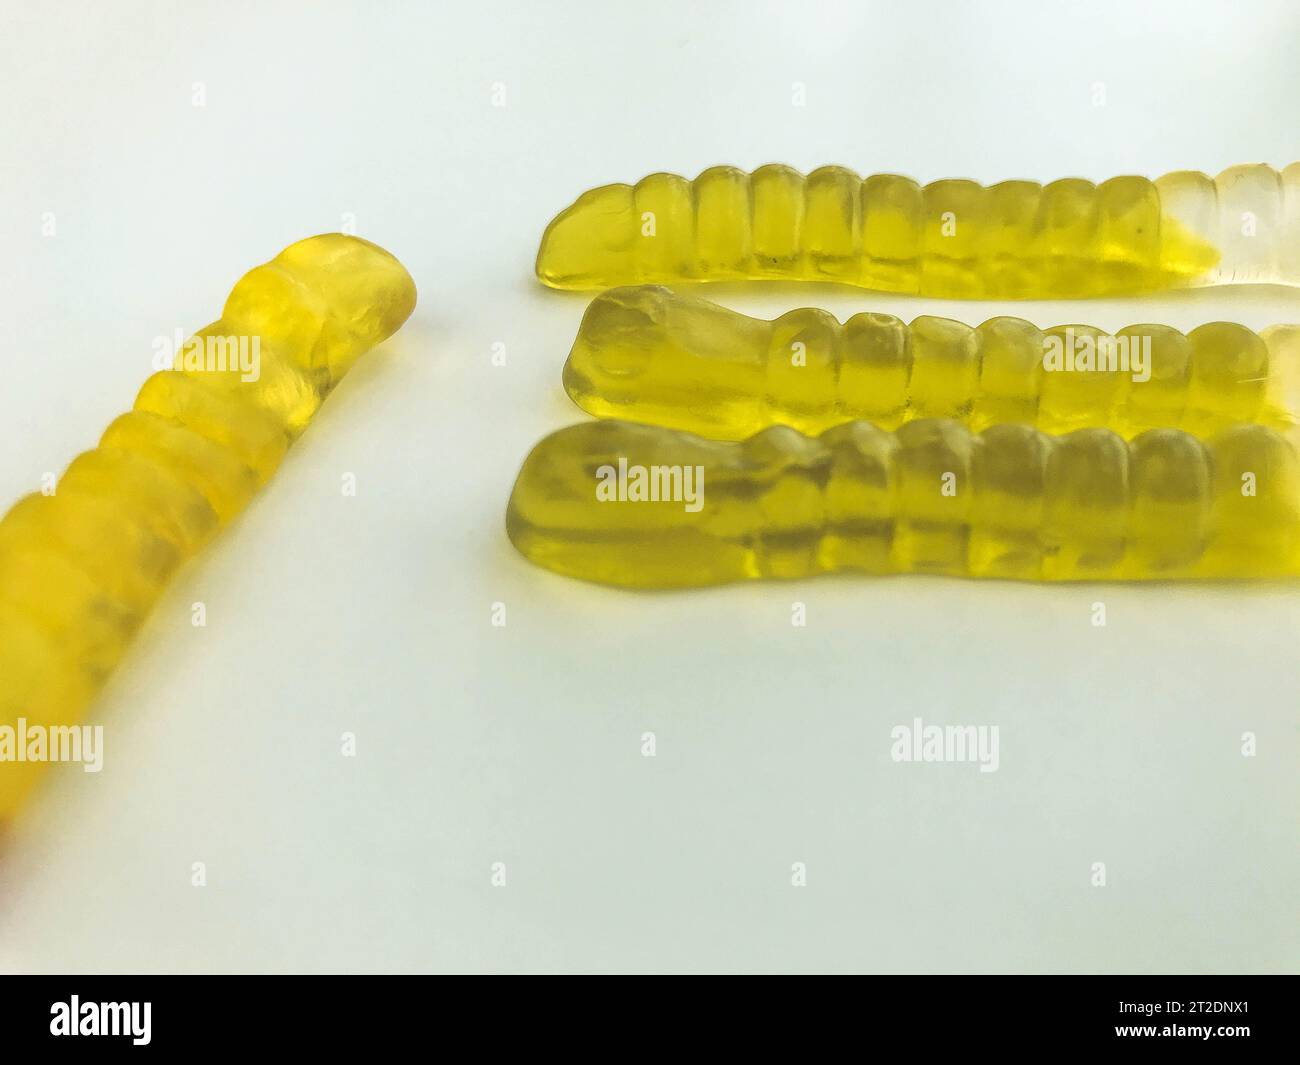 Gummiwürmer liegen auf weißem, mattem Hintergrund. Helle, appetitlich grüne gelatinöse Würmer. Trick or Treat, halloween-Süßigkeiten. Behandlung von Kindern während der Stockfoto